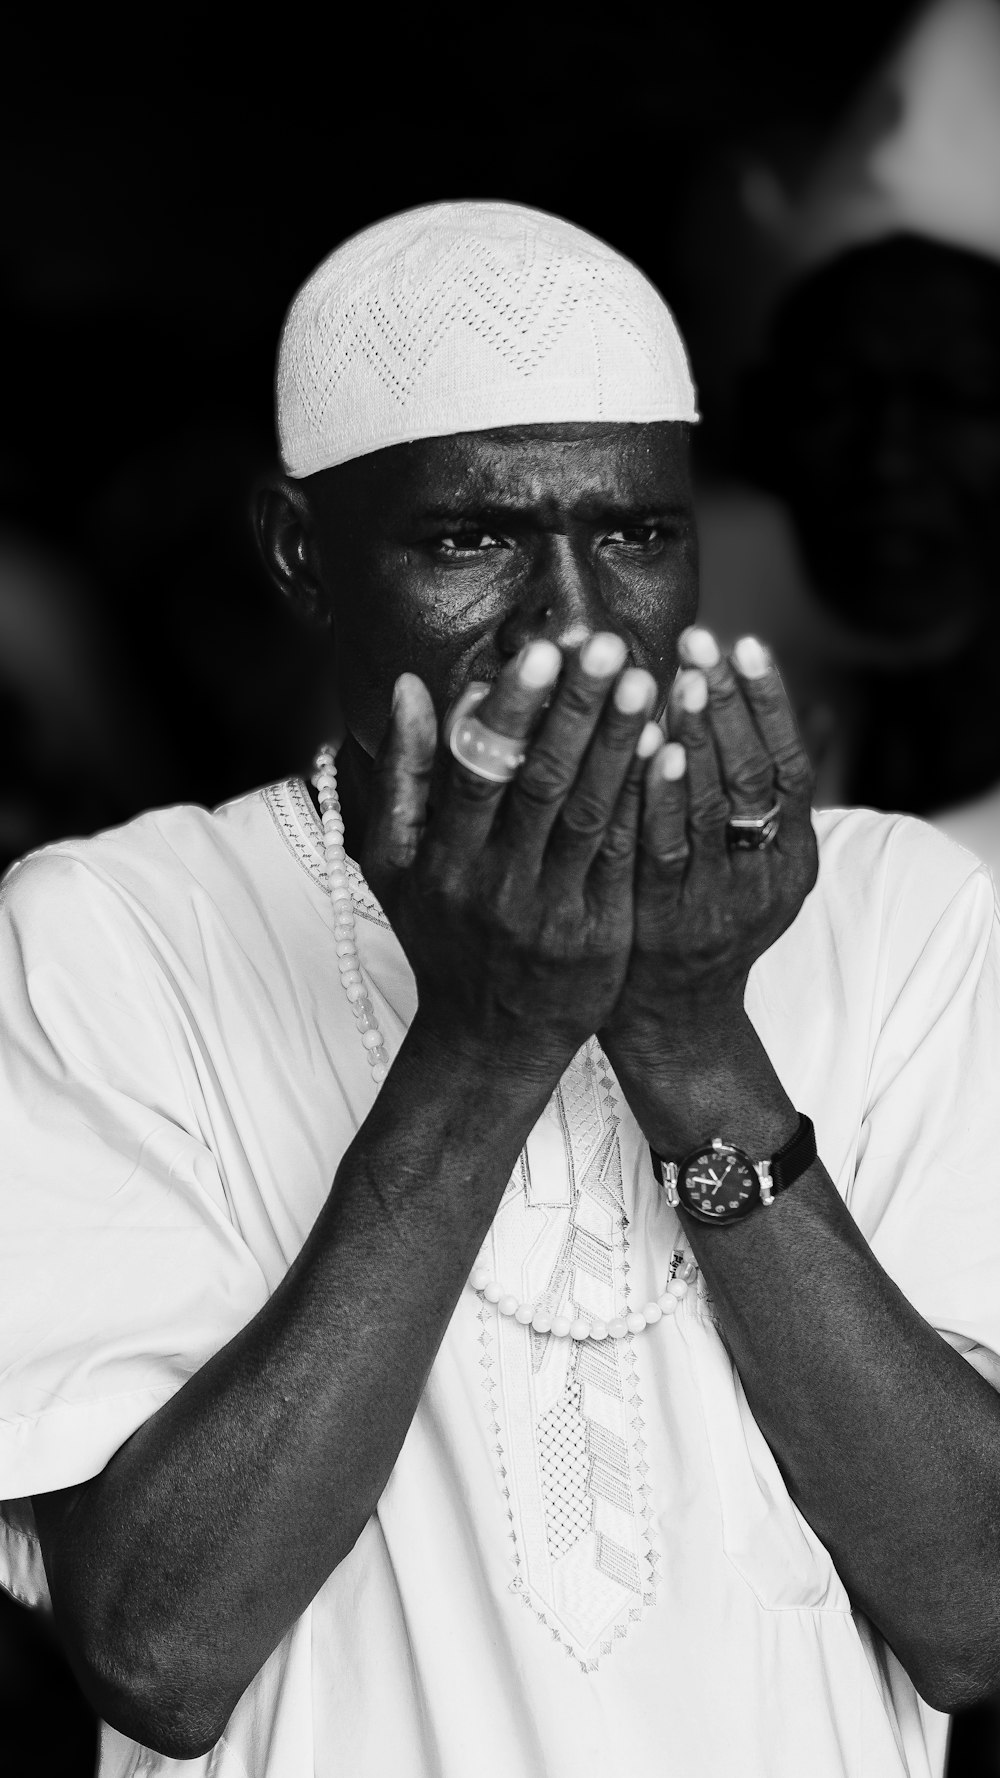 Una foto en blanco y negro de un hombre rezando